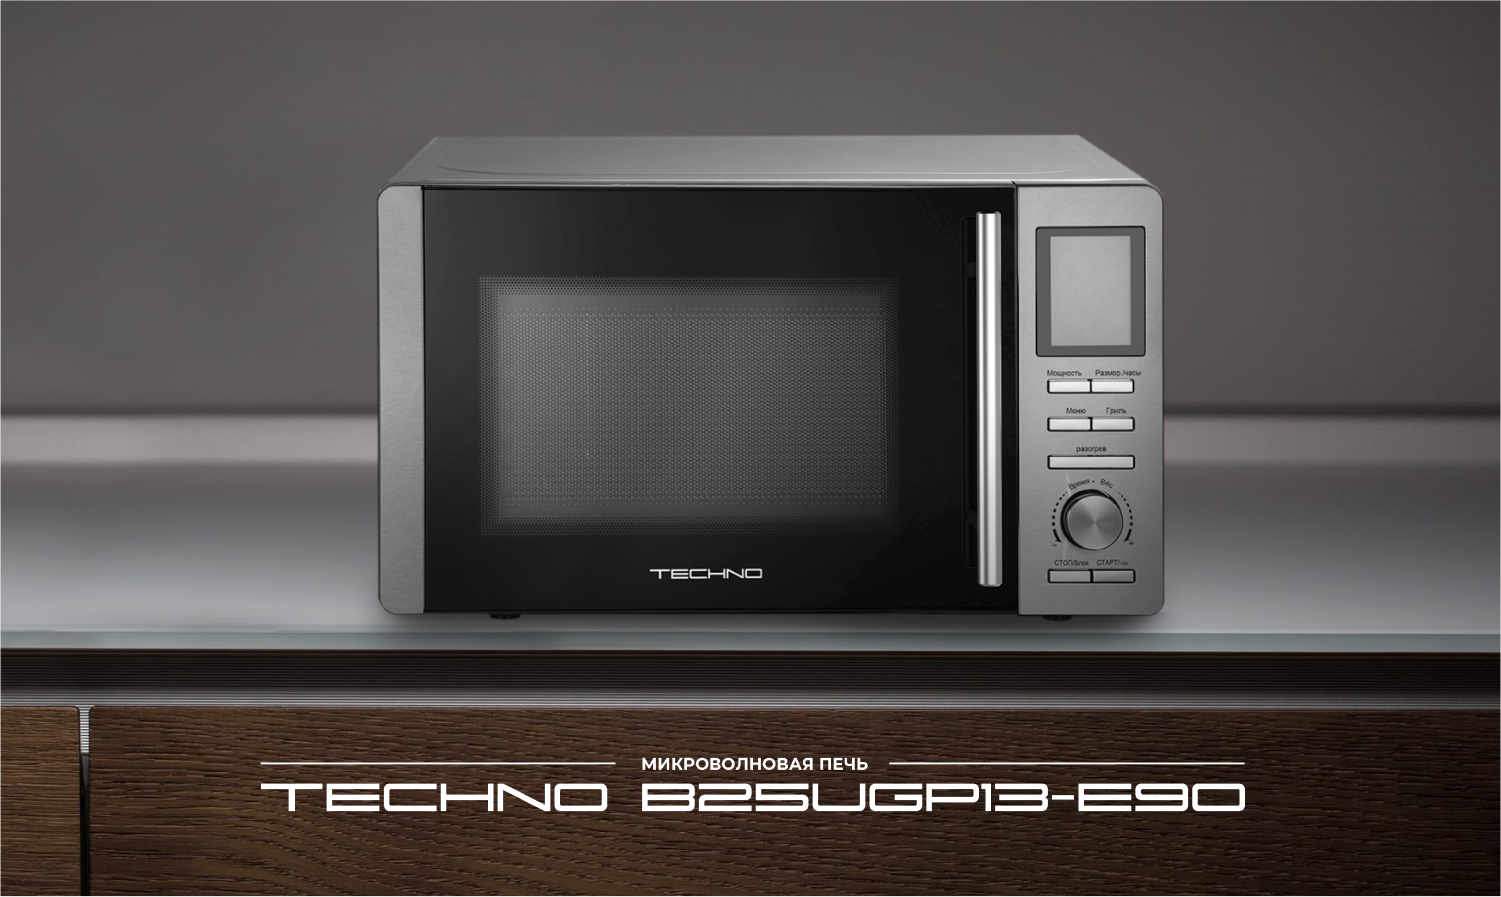 Микроволновая печь TECHNO B25UGP13-E90